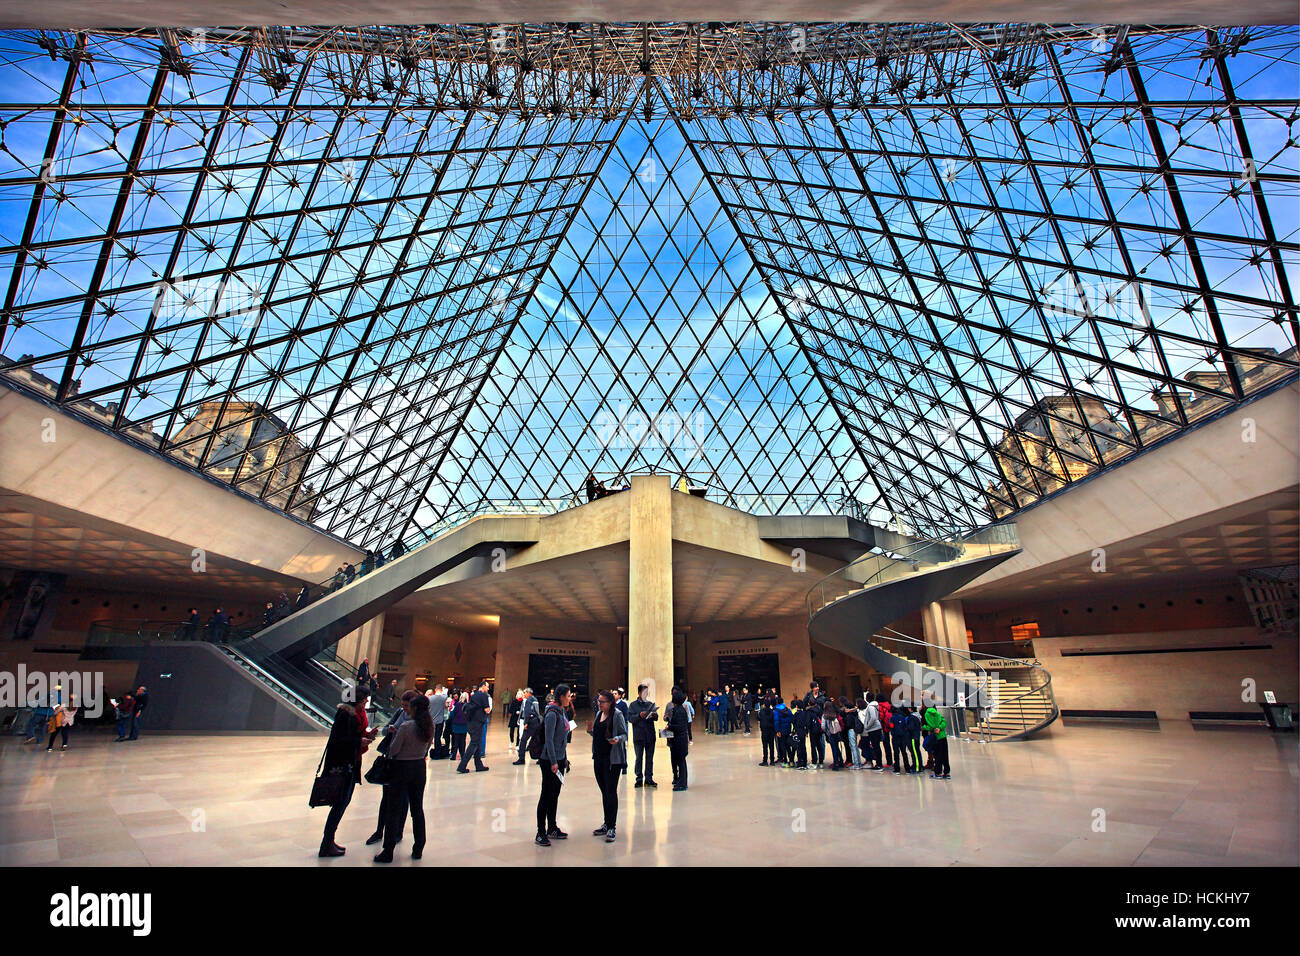 En la entrada principal del museo del Louvre, en virtud de la famosa pirámide de cristal. París, Francia. Foto de stock